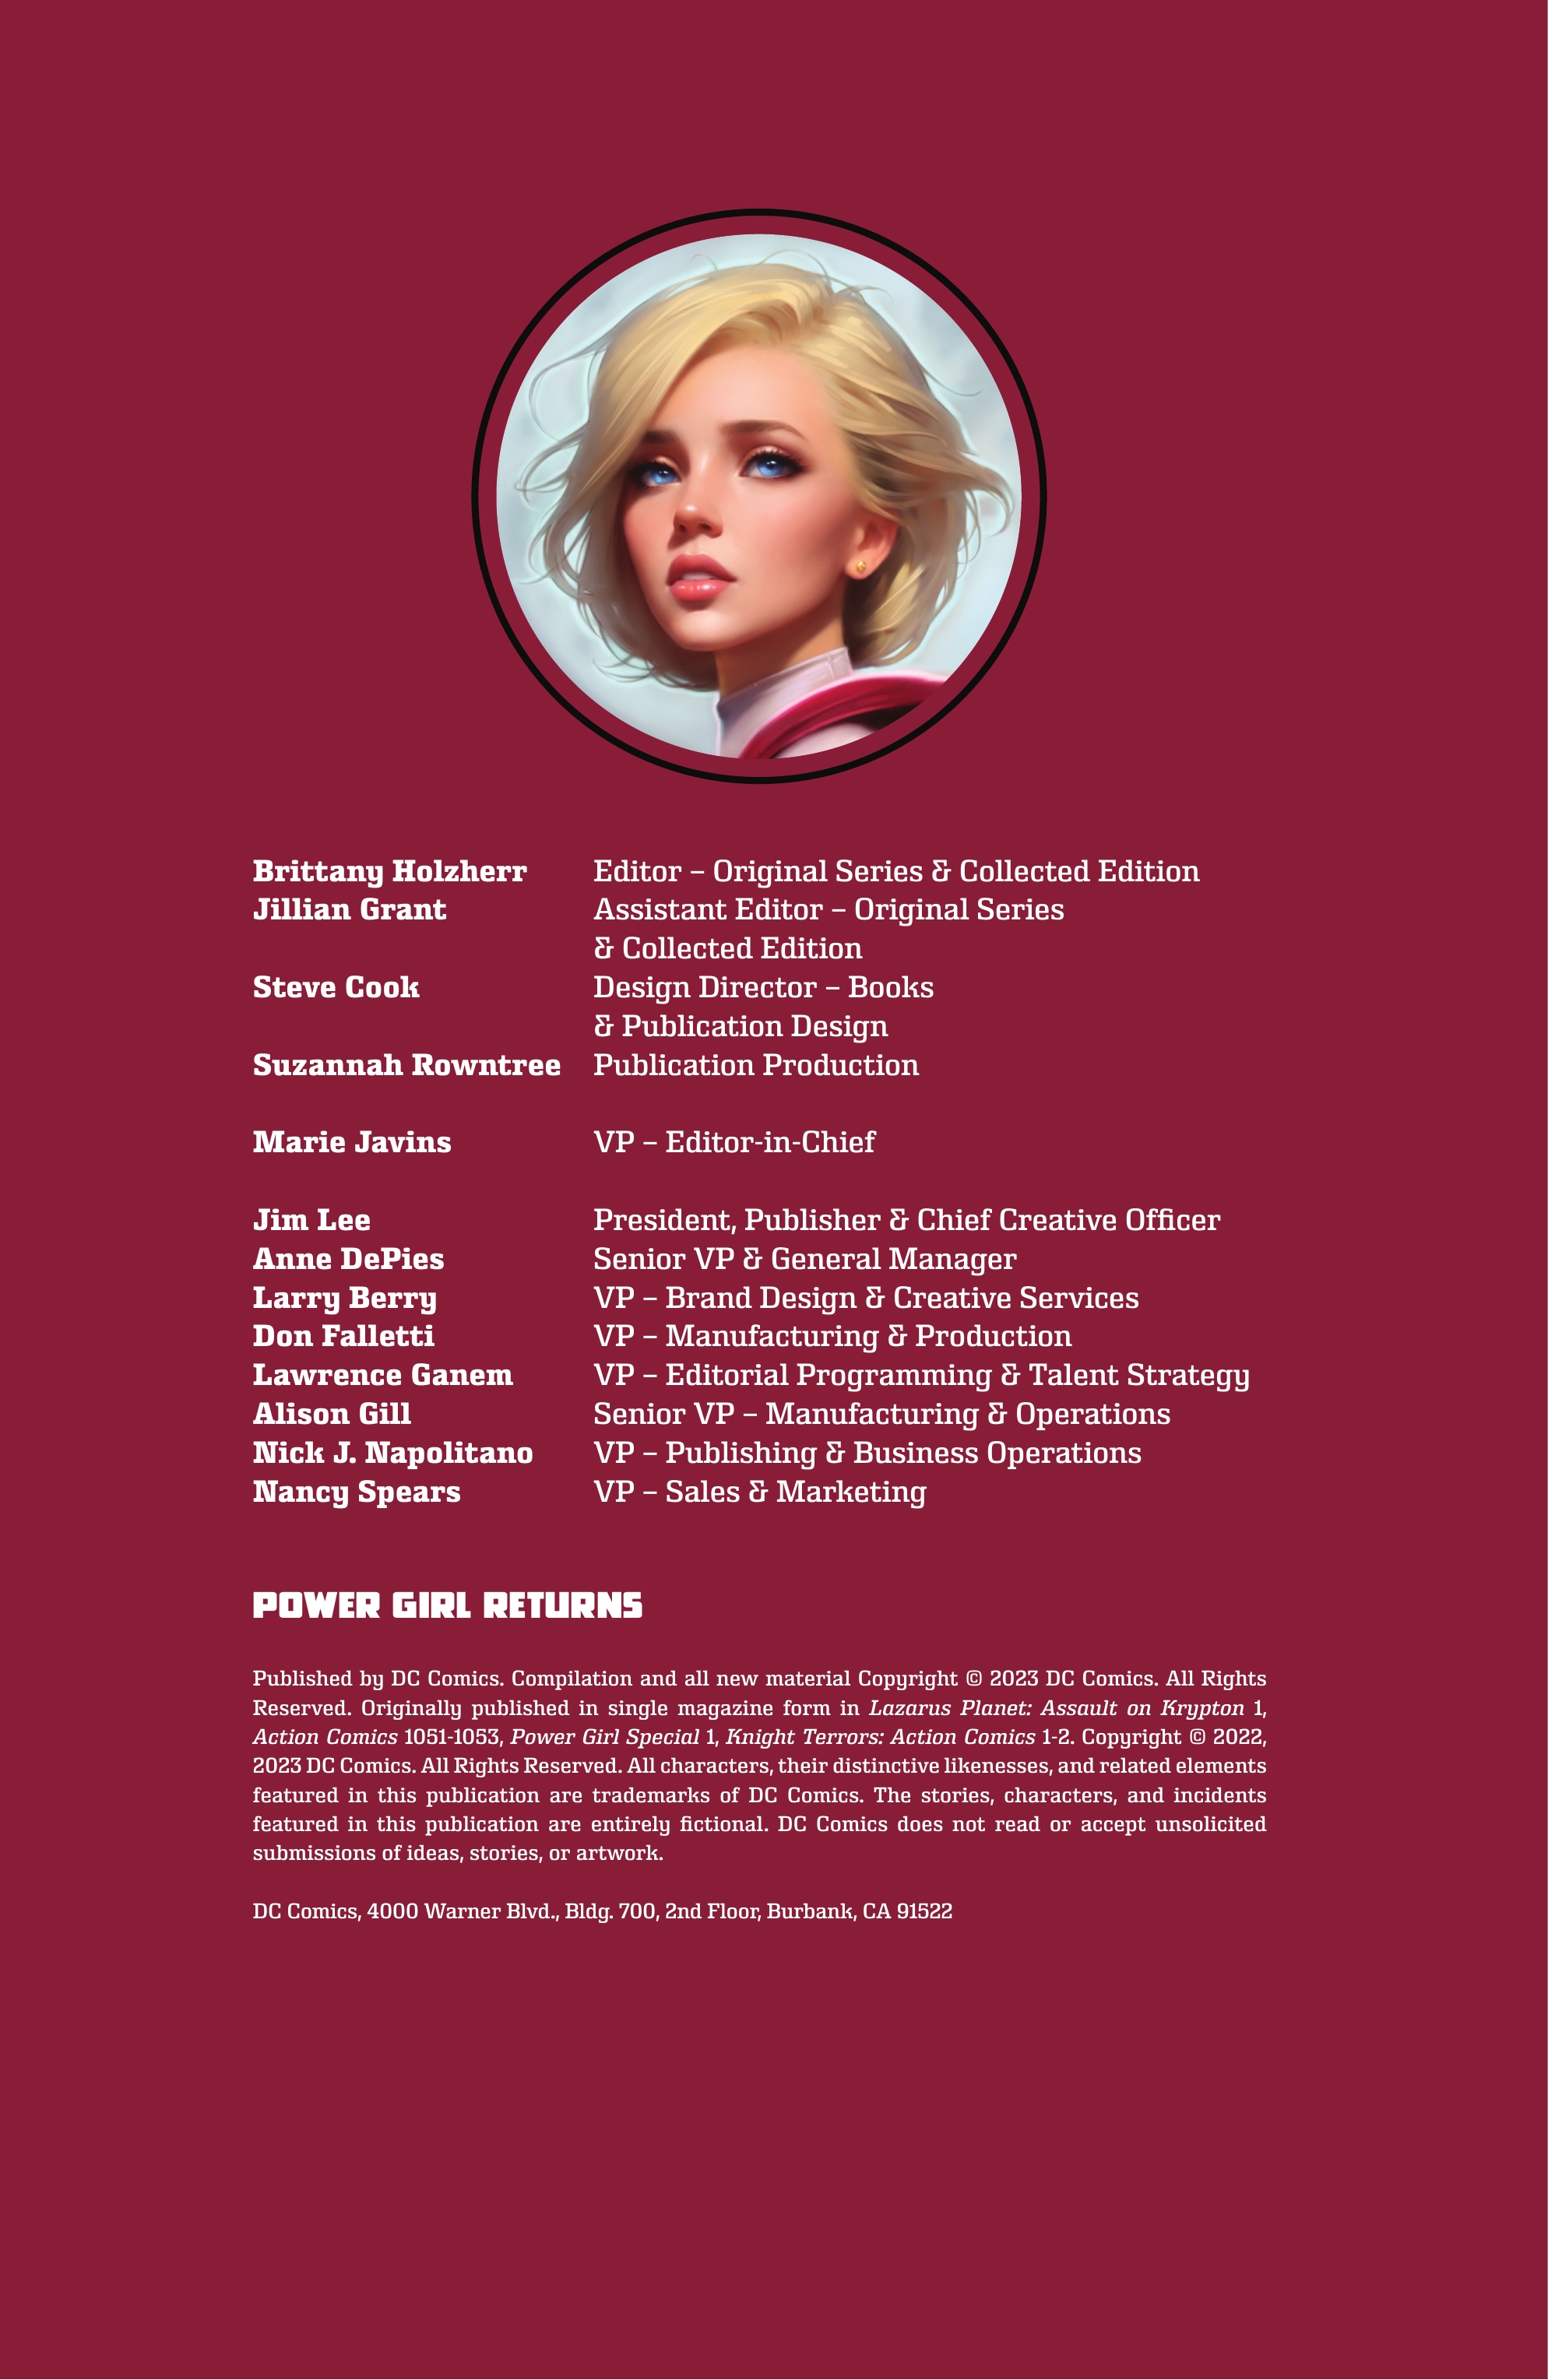 Read online Power Girl Returns comic -  Issue # TPB - 4